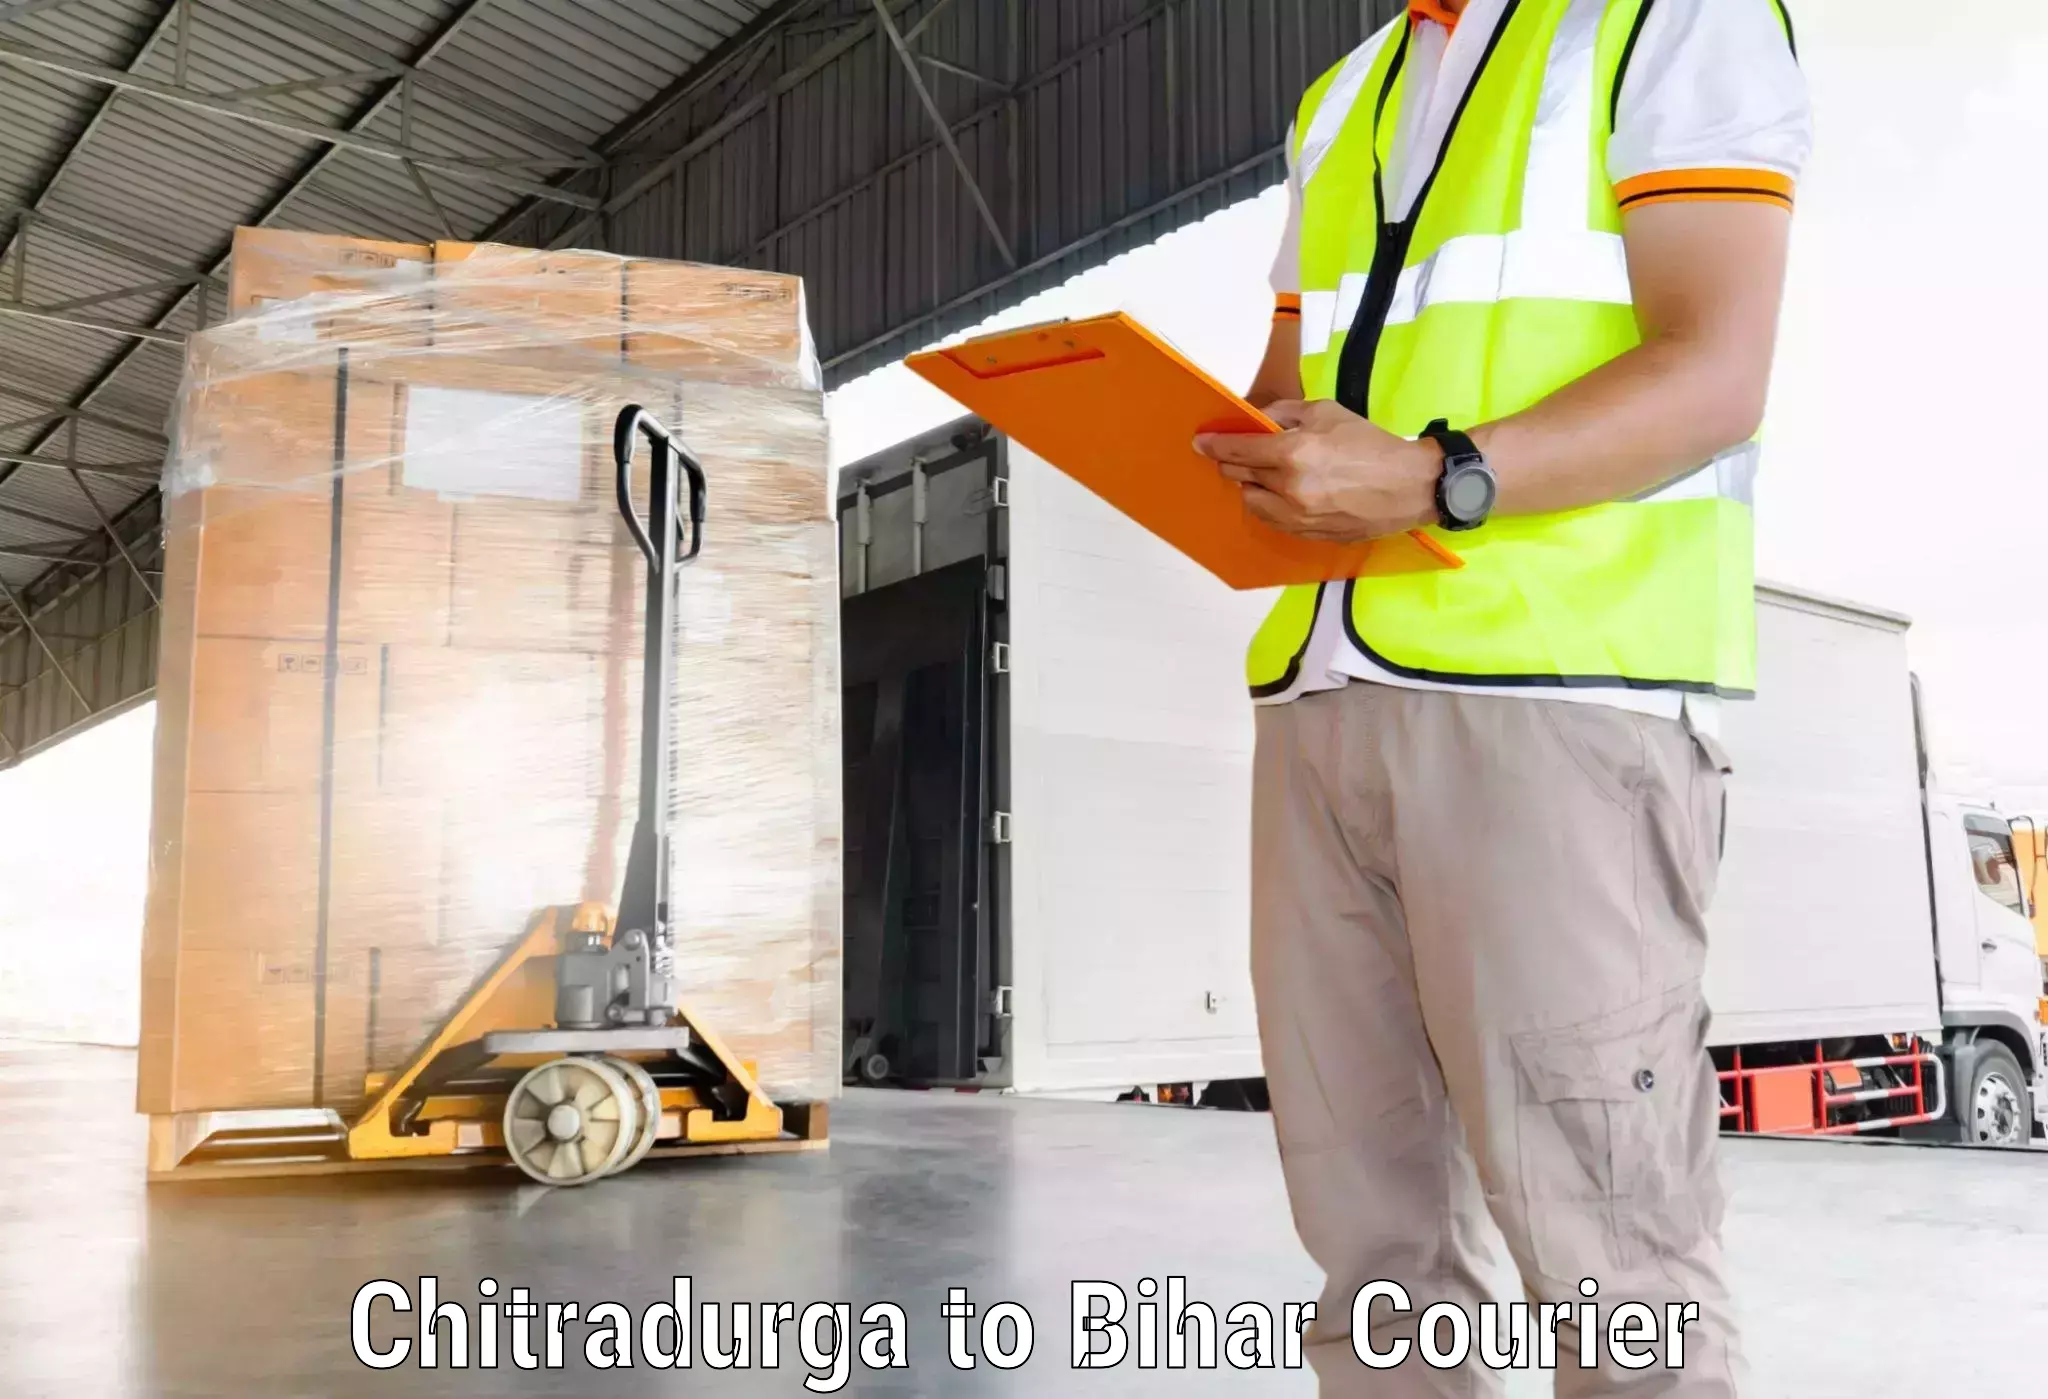 Holiday shipping services Chitradurga to Bagaha